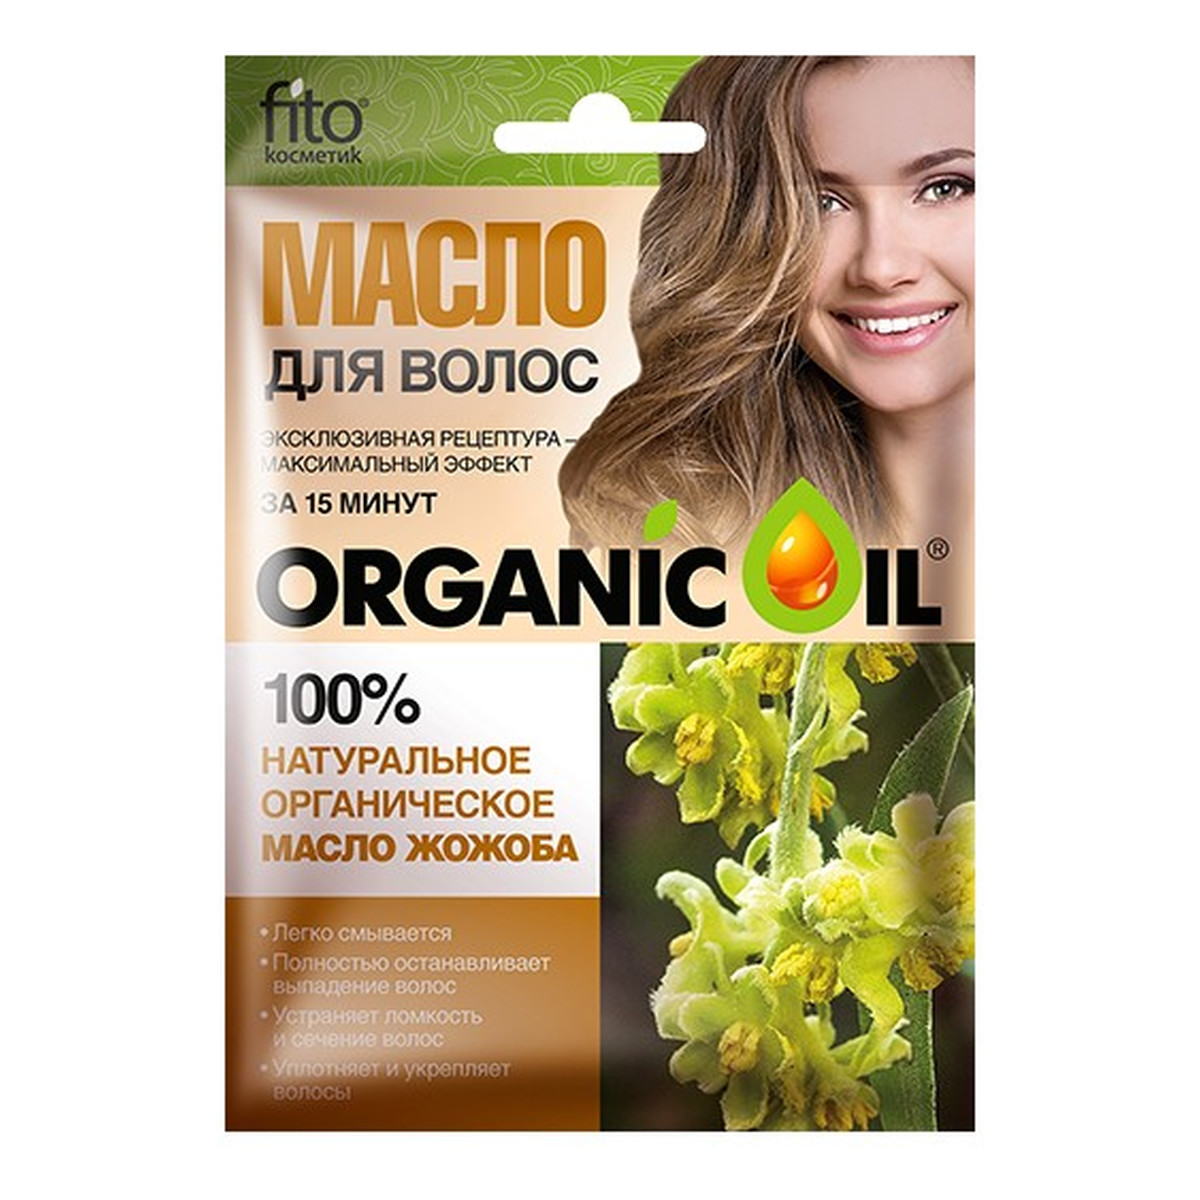 Fitokosmetik Naturalny organiczny olejek jojoba do włosów 20ml